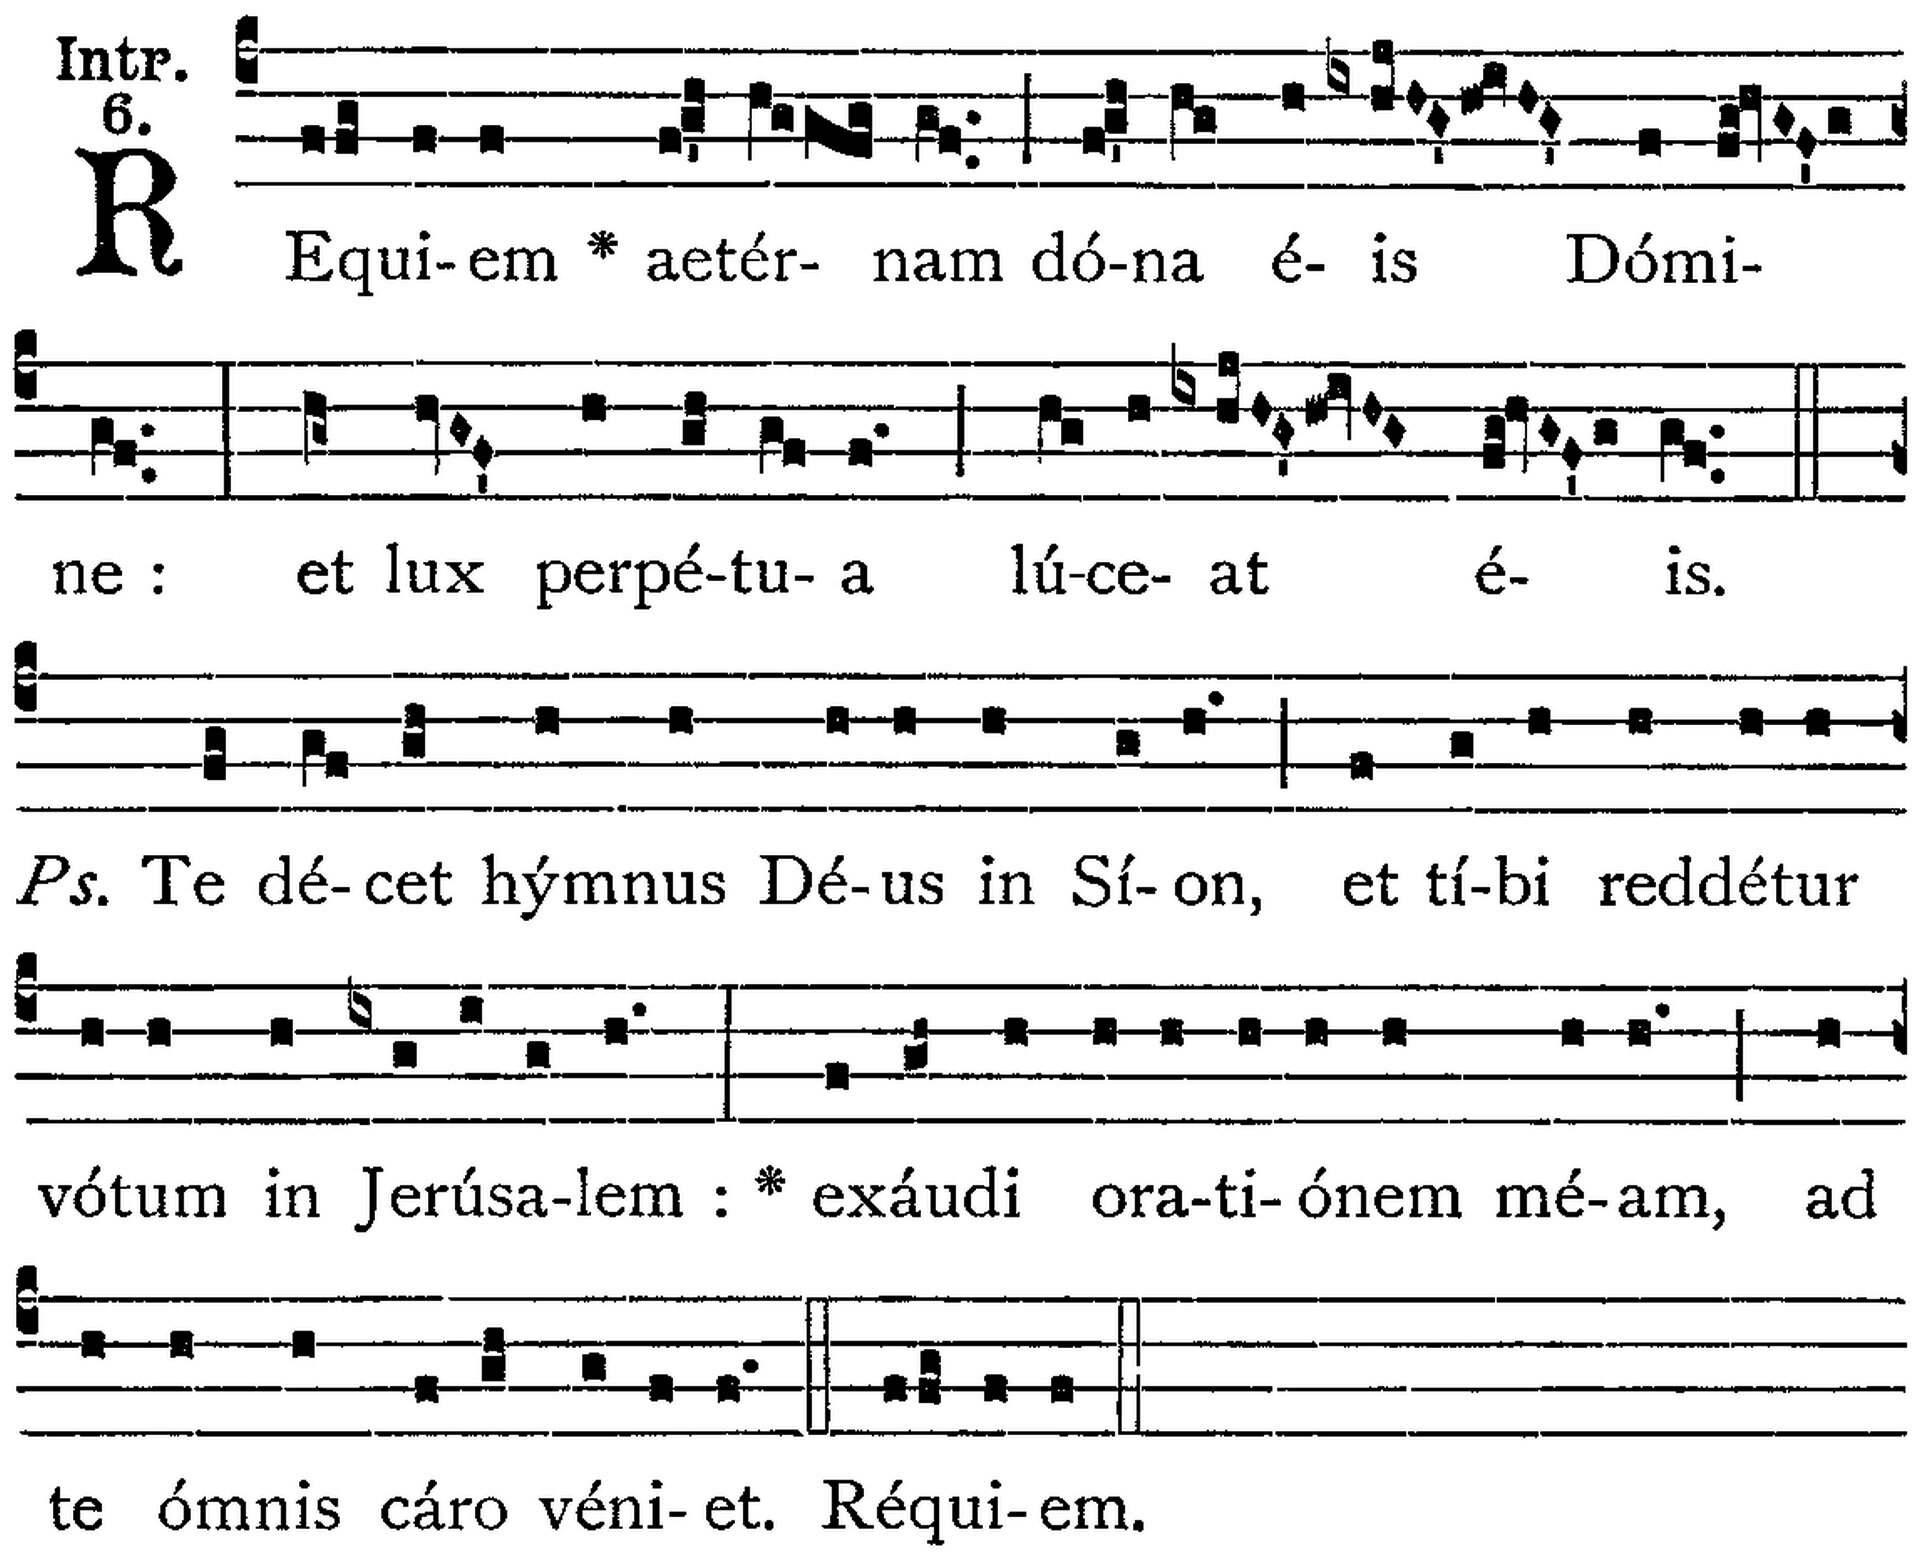 Fotografia przedstawia nuty do chorału gregoriańskiego „Missa pro defunctis”.